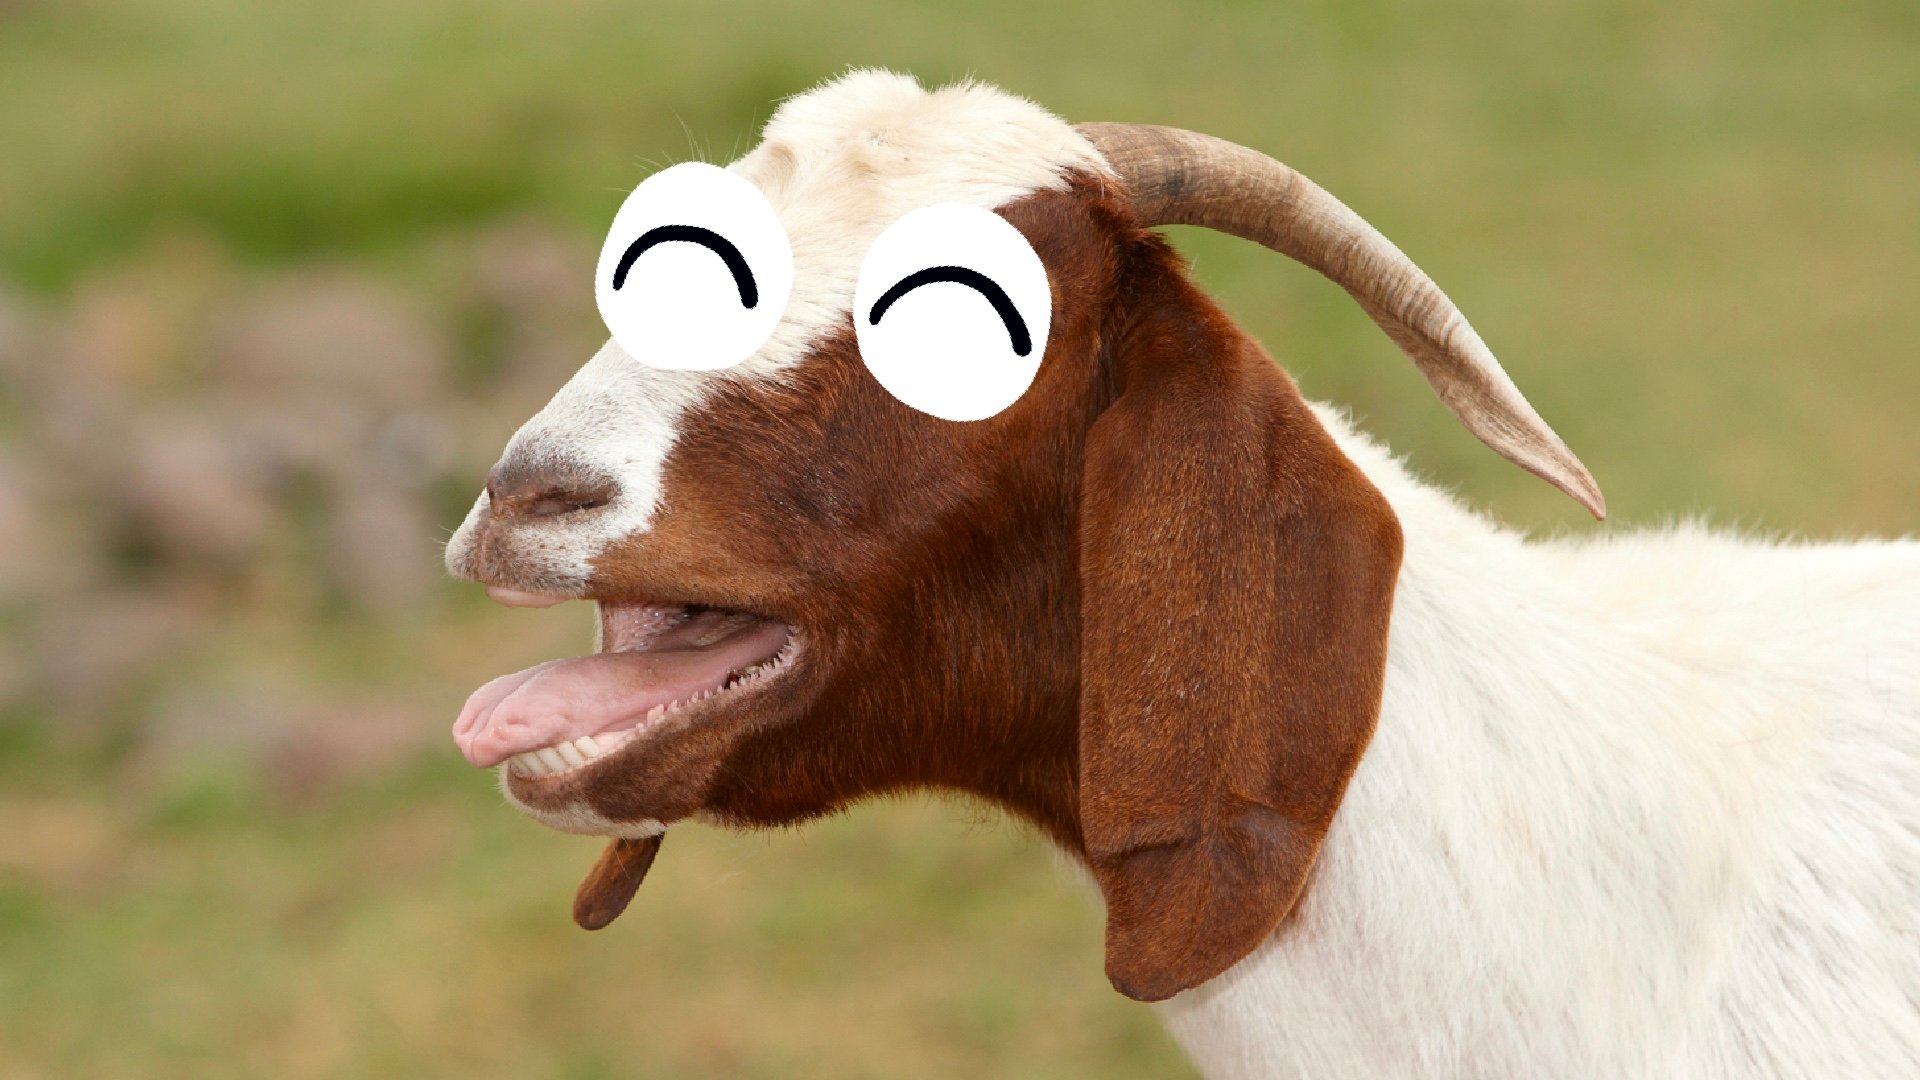 A burping goat